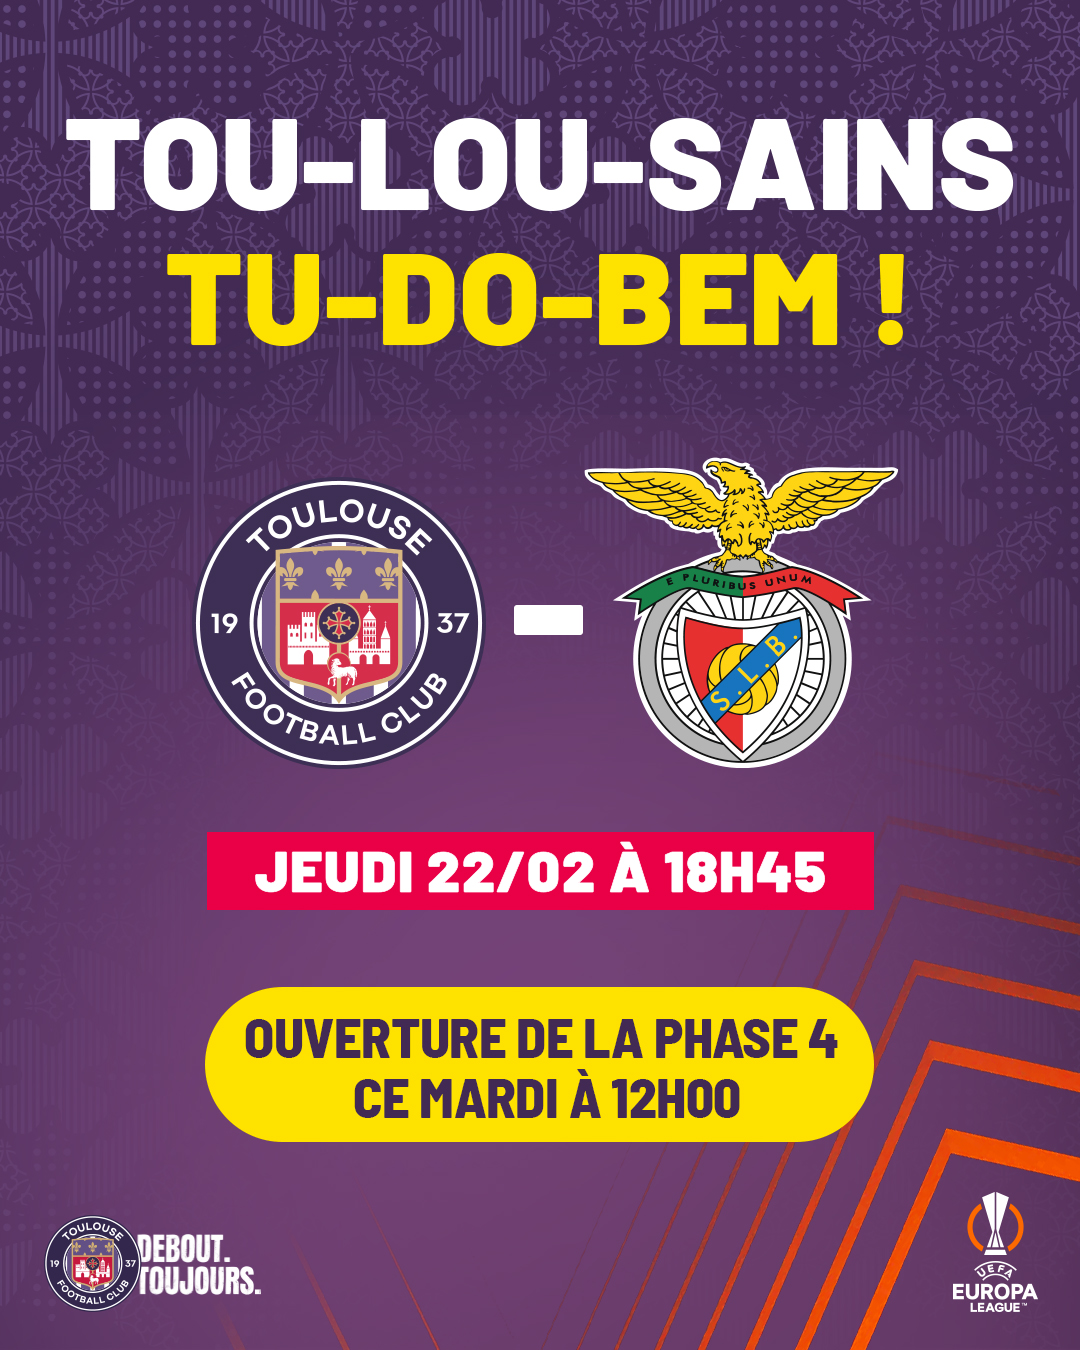 Le Toulouse FC de retour à Trélut !